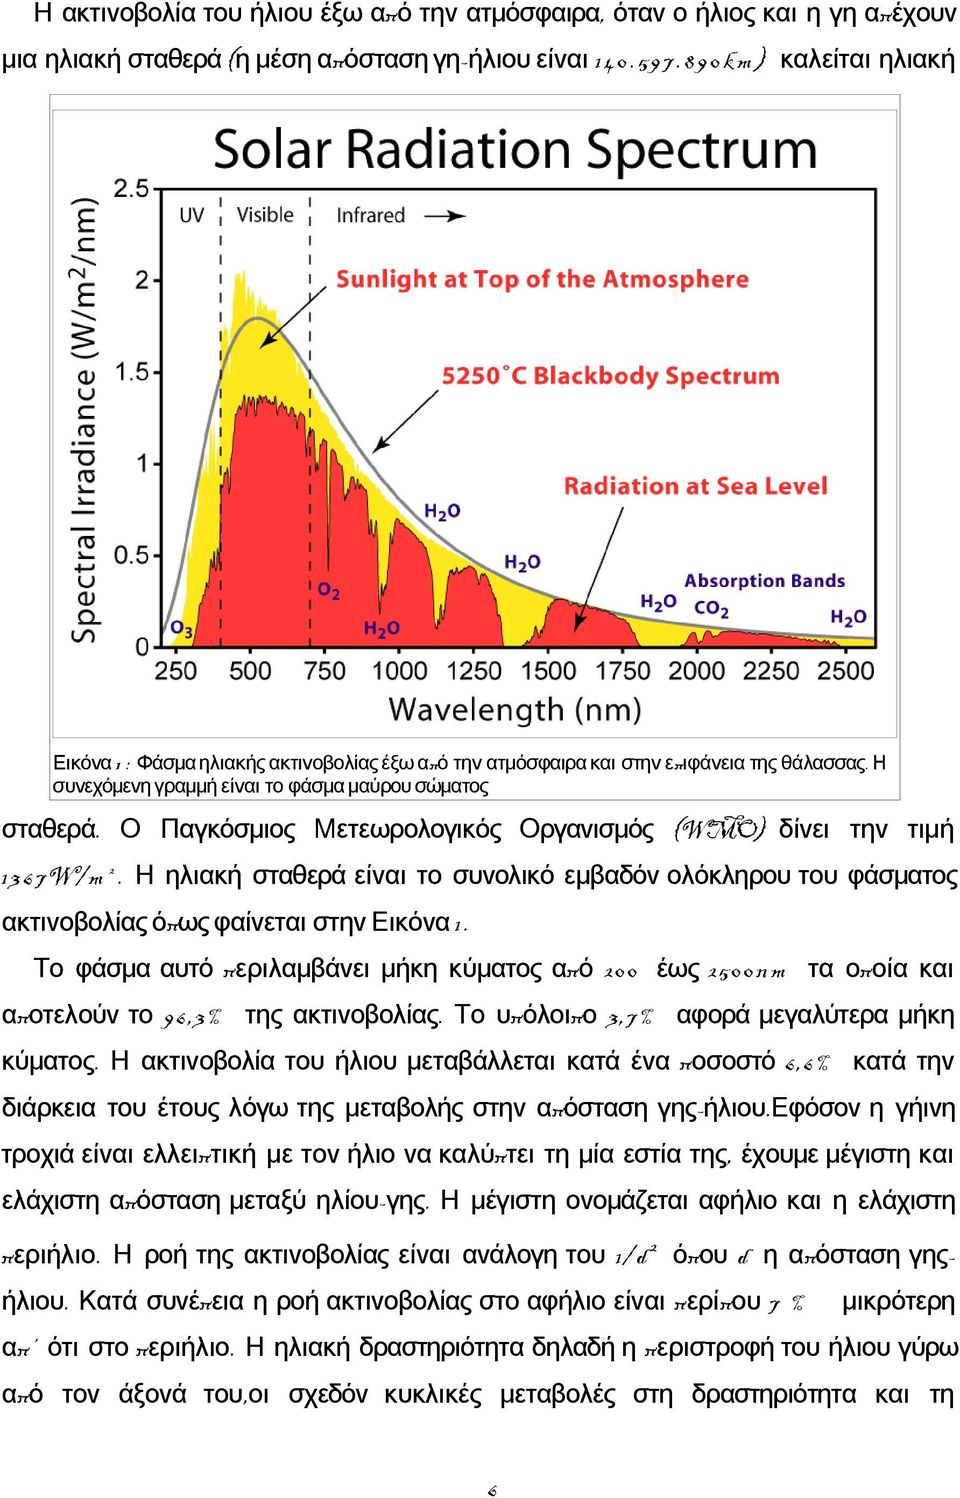 Ο Παγκόσμιος Μετεωρολογικός Οργανισμός (WMO) δίνει την τιμή 13 6 7W/m 2. Η ηλιακή σταθερά είναι το συνολικό εμβαδόν ολόκληρου του φάσματος ακτινοβολίας όπως φαίνεται στην Εικόνα 1.